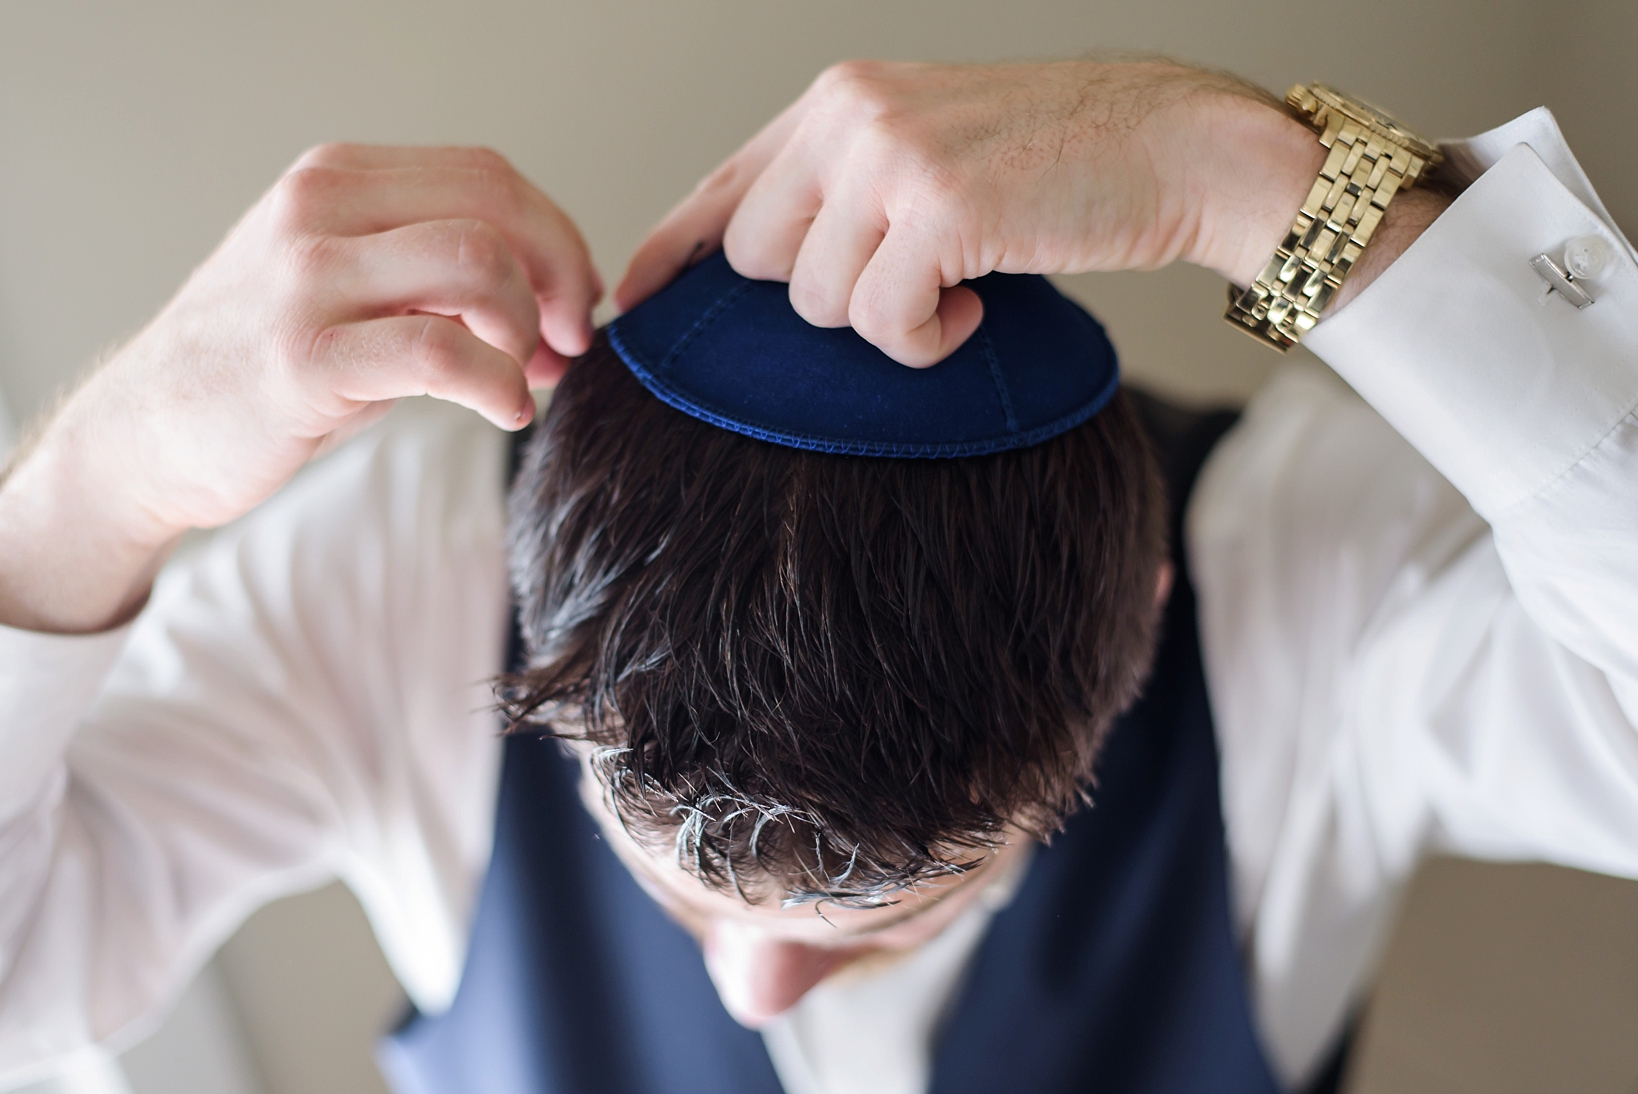 Groom putting his yarmulke on before his wedding